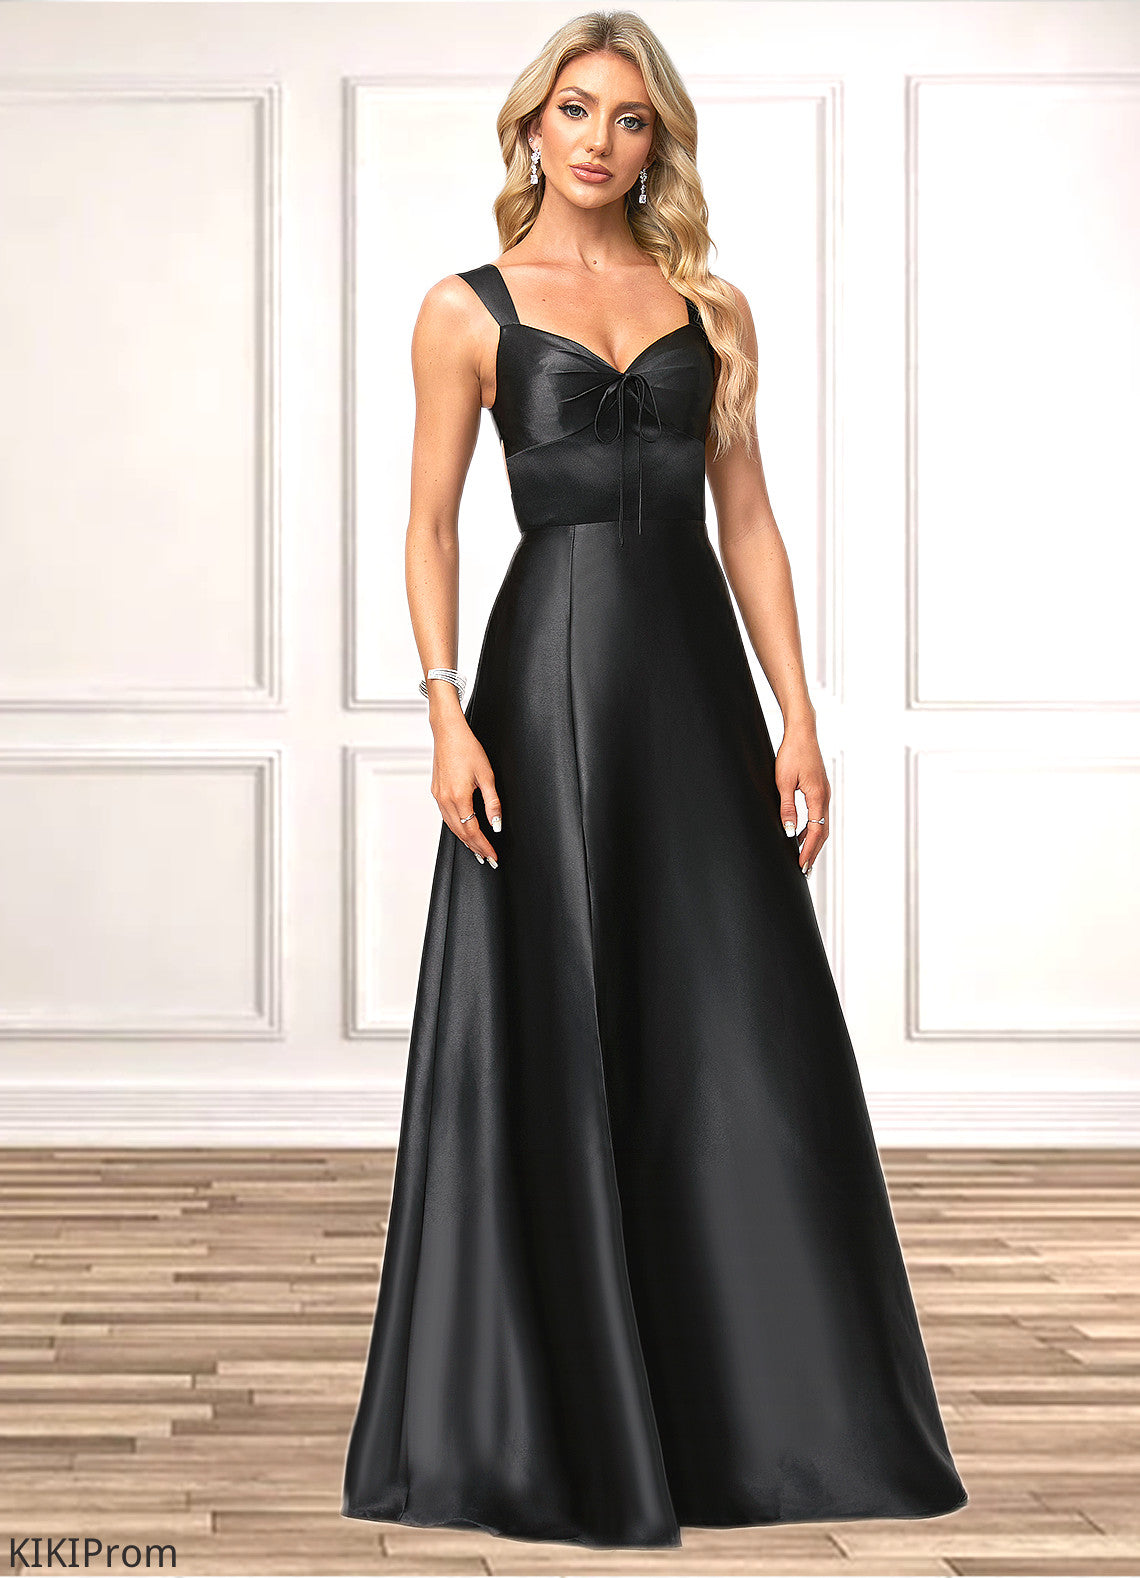 Paris A-line V-Neck Floor-Length Stretch Satin Bridesmaid Dress With Bow DZP0022615